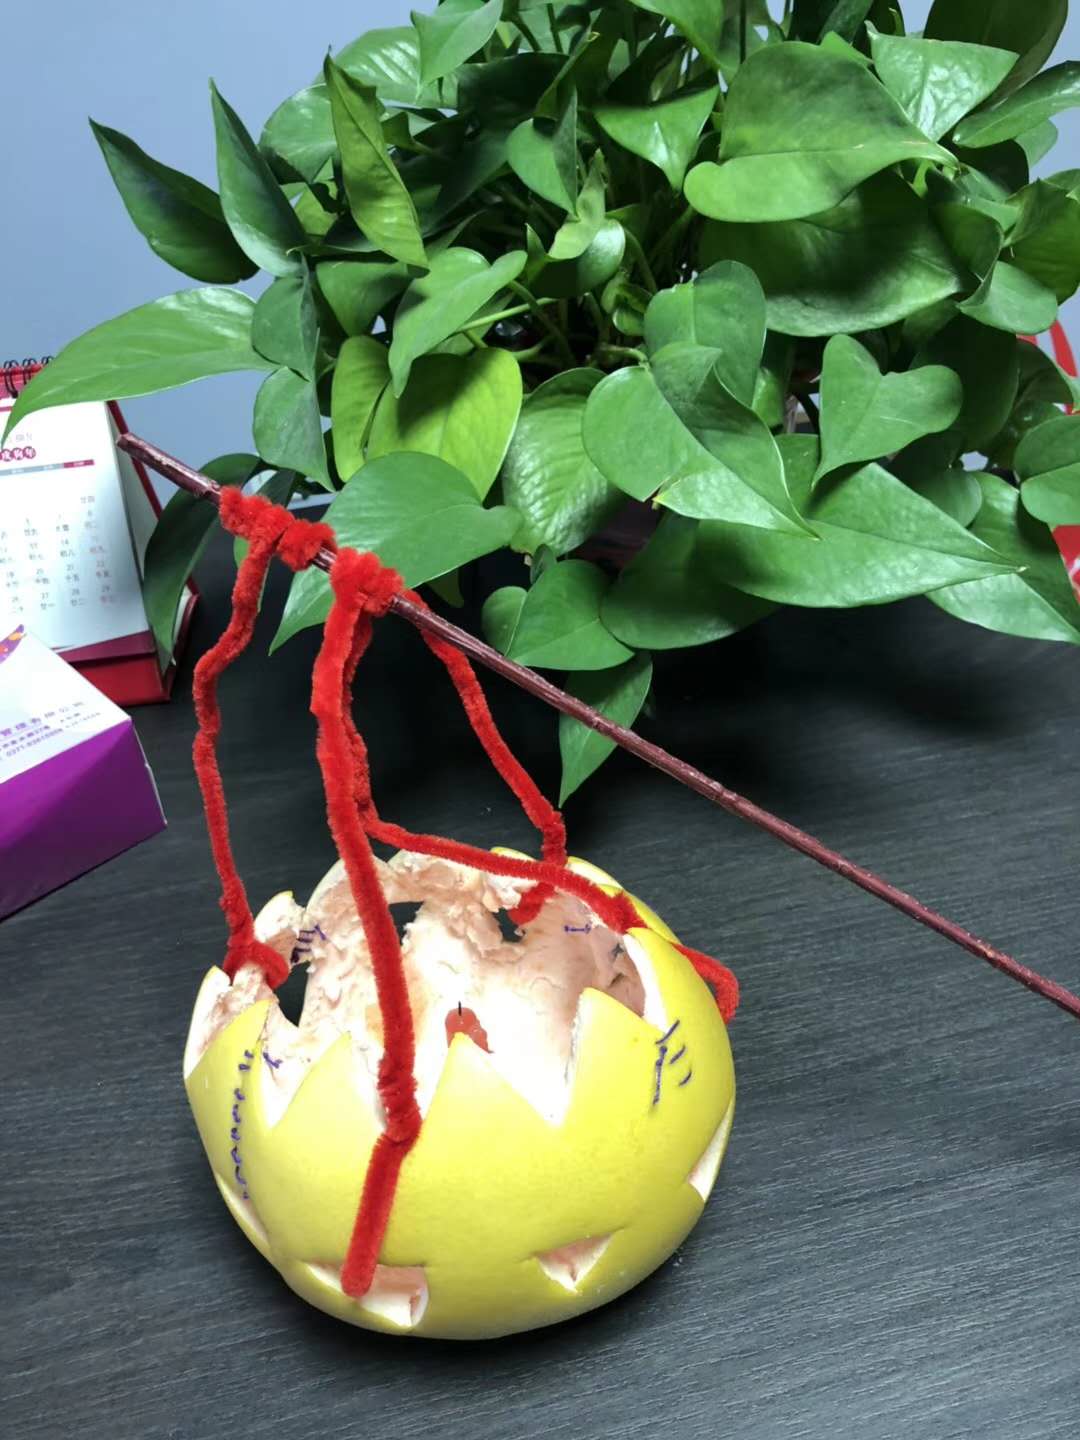 柚子皮艺术手工制作图片